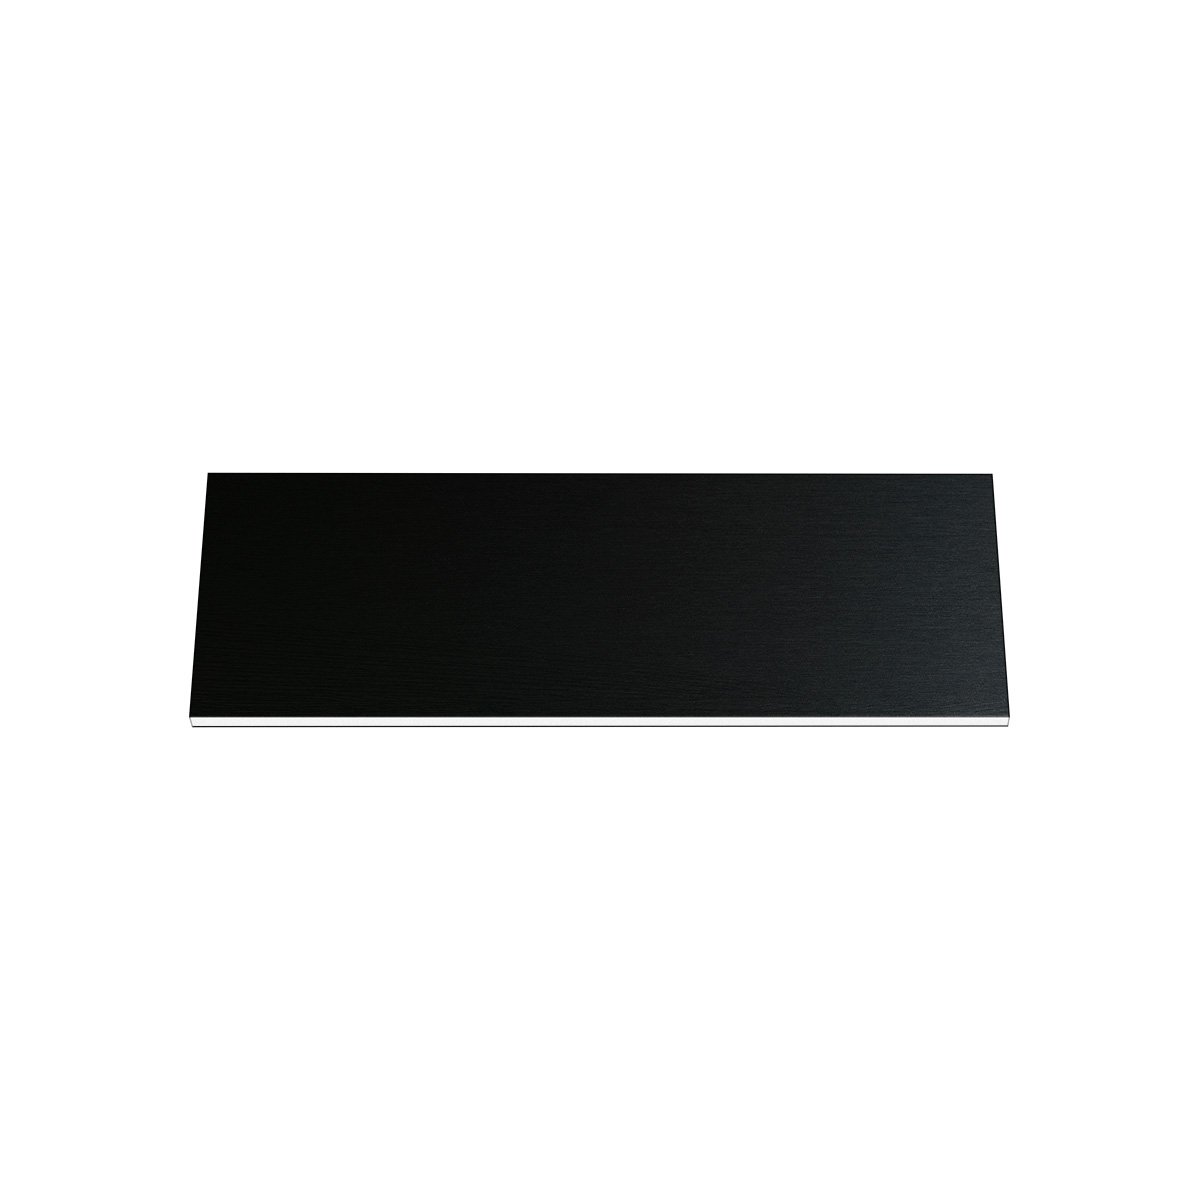 Gravurschild Resopal, schwarz, rechteckig, 50 x 15 mm, 1,5 mm dick, mit Kleber